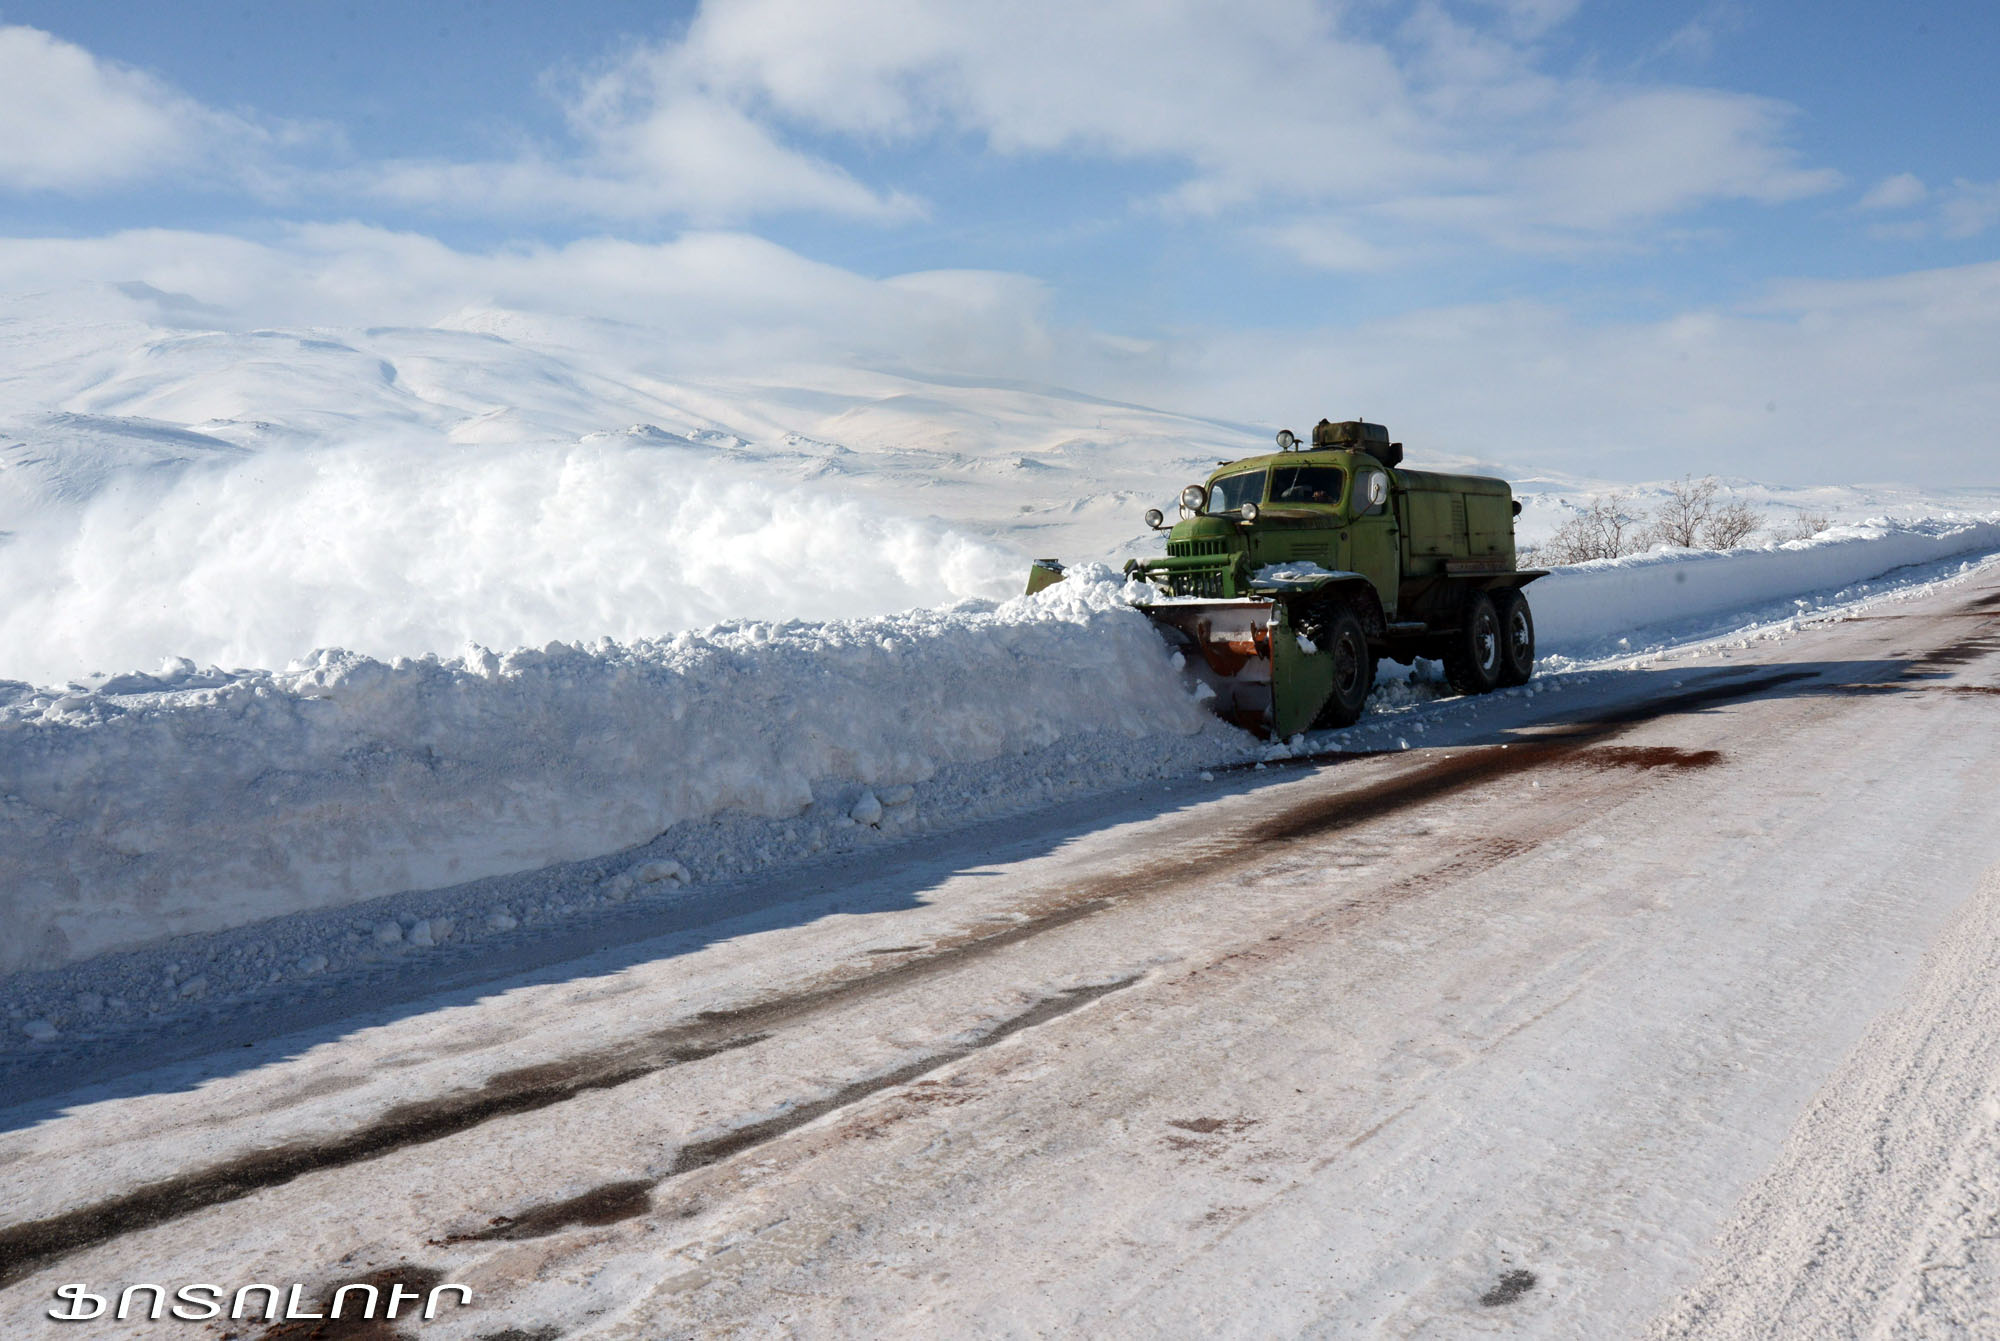 Հանրապետության մի շարք վայրերում թույլ ձյուն է տեղում. վարորդներին կրկին հորդորում ենք ցուցաբերել ծայրաստիճան զգոնություն և զգուշություն